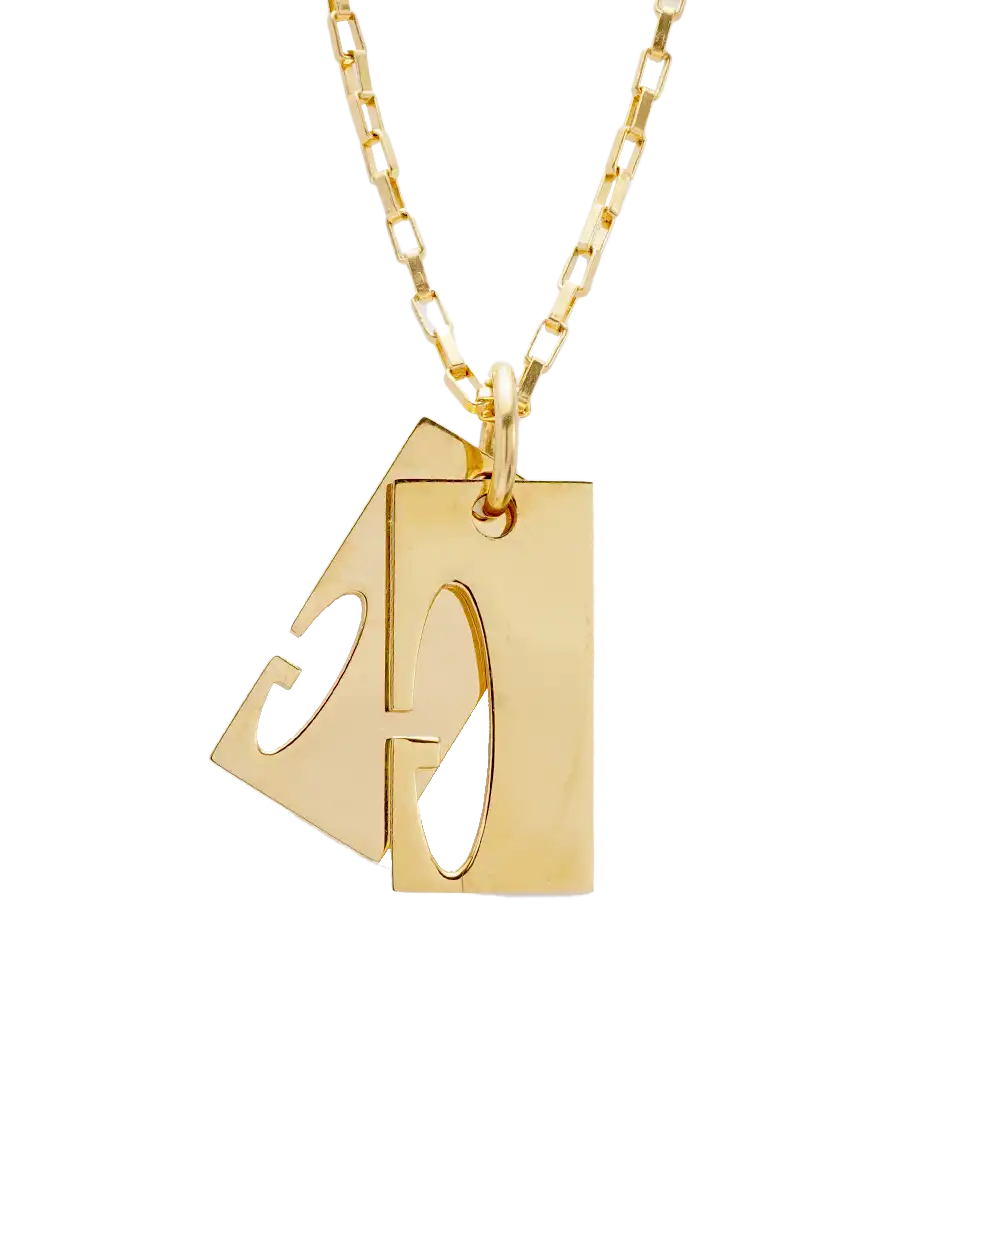 خرید گردنبند زنانه استیل مدل 1643 رنگ طلایی با بهترین قیمت به همراه ارسال رایگان به سراسر ایران درب منزل و جعبه ی مخصوص کادویی